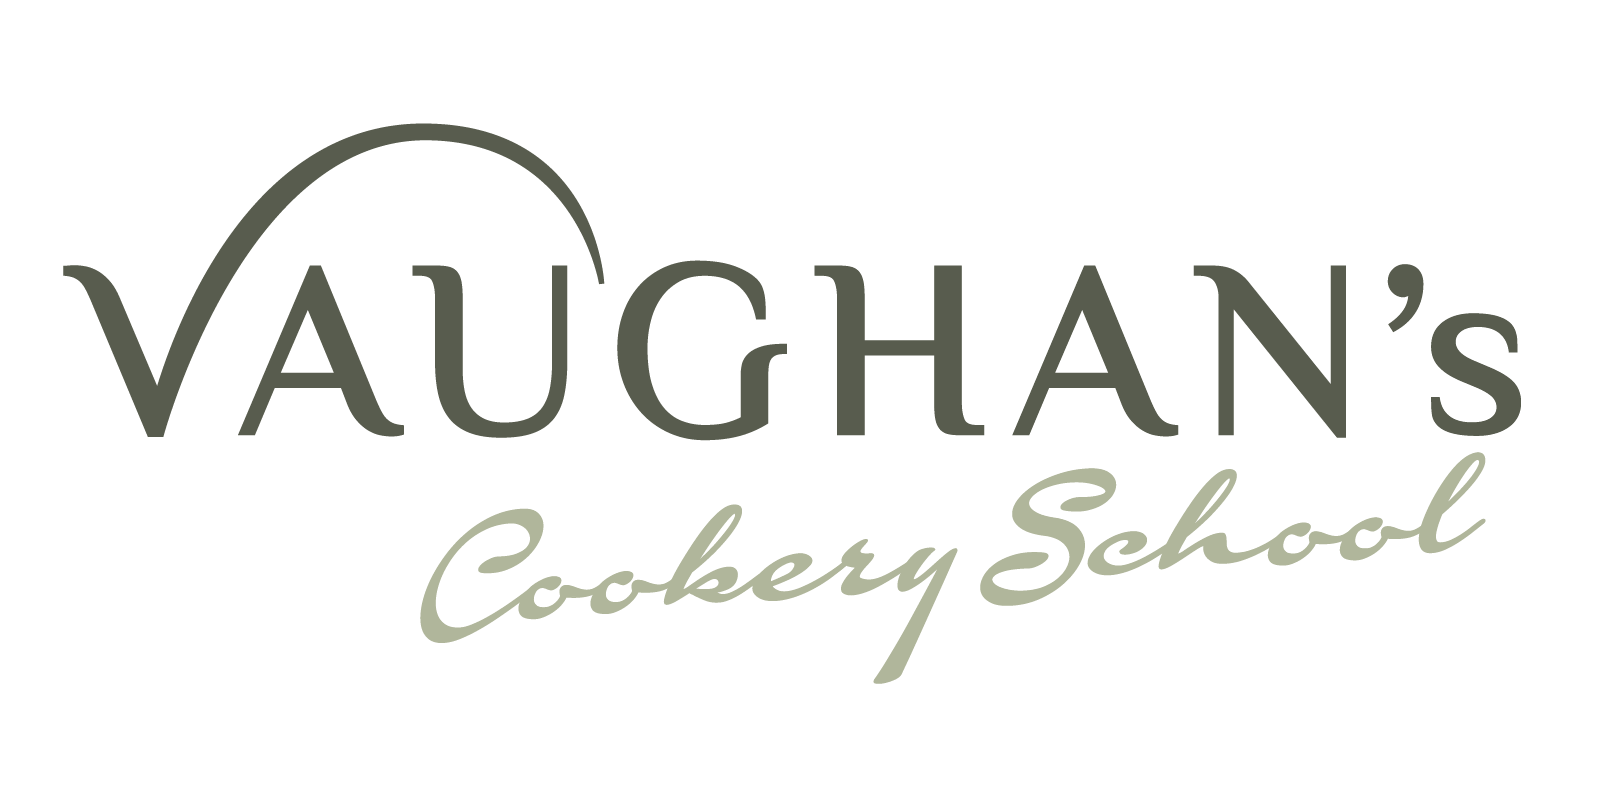 Rectangular Vaughan's Cookery School